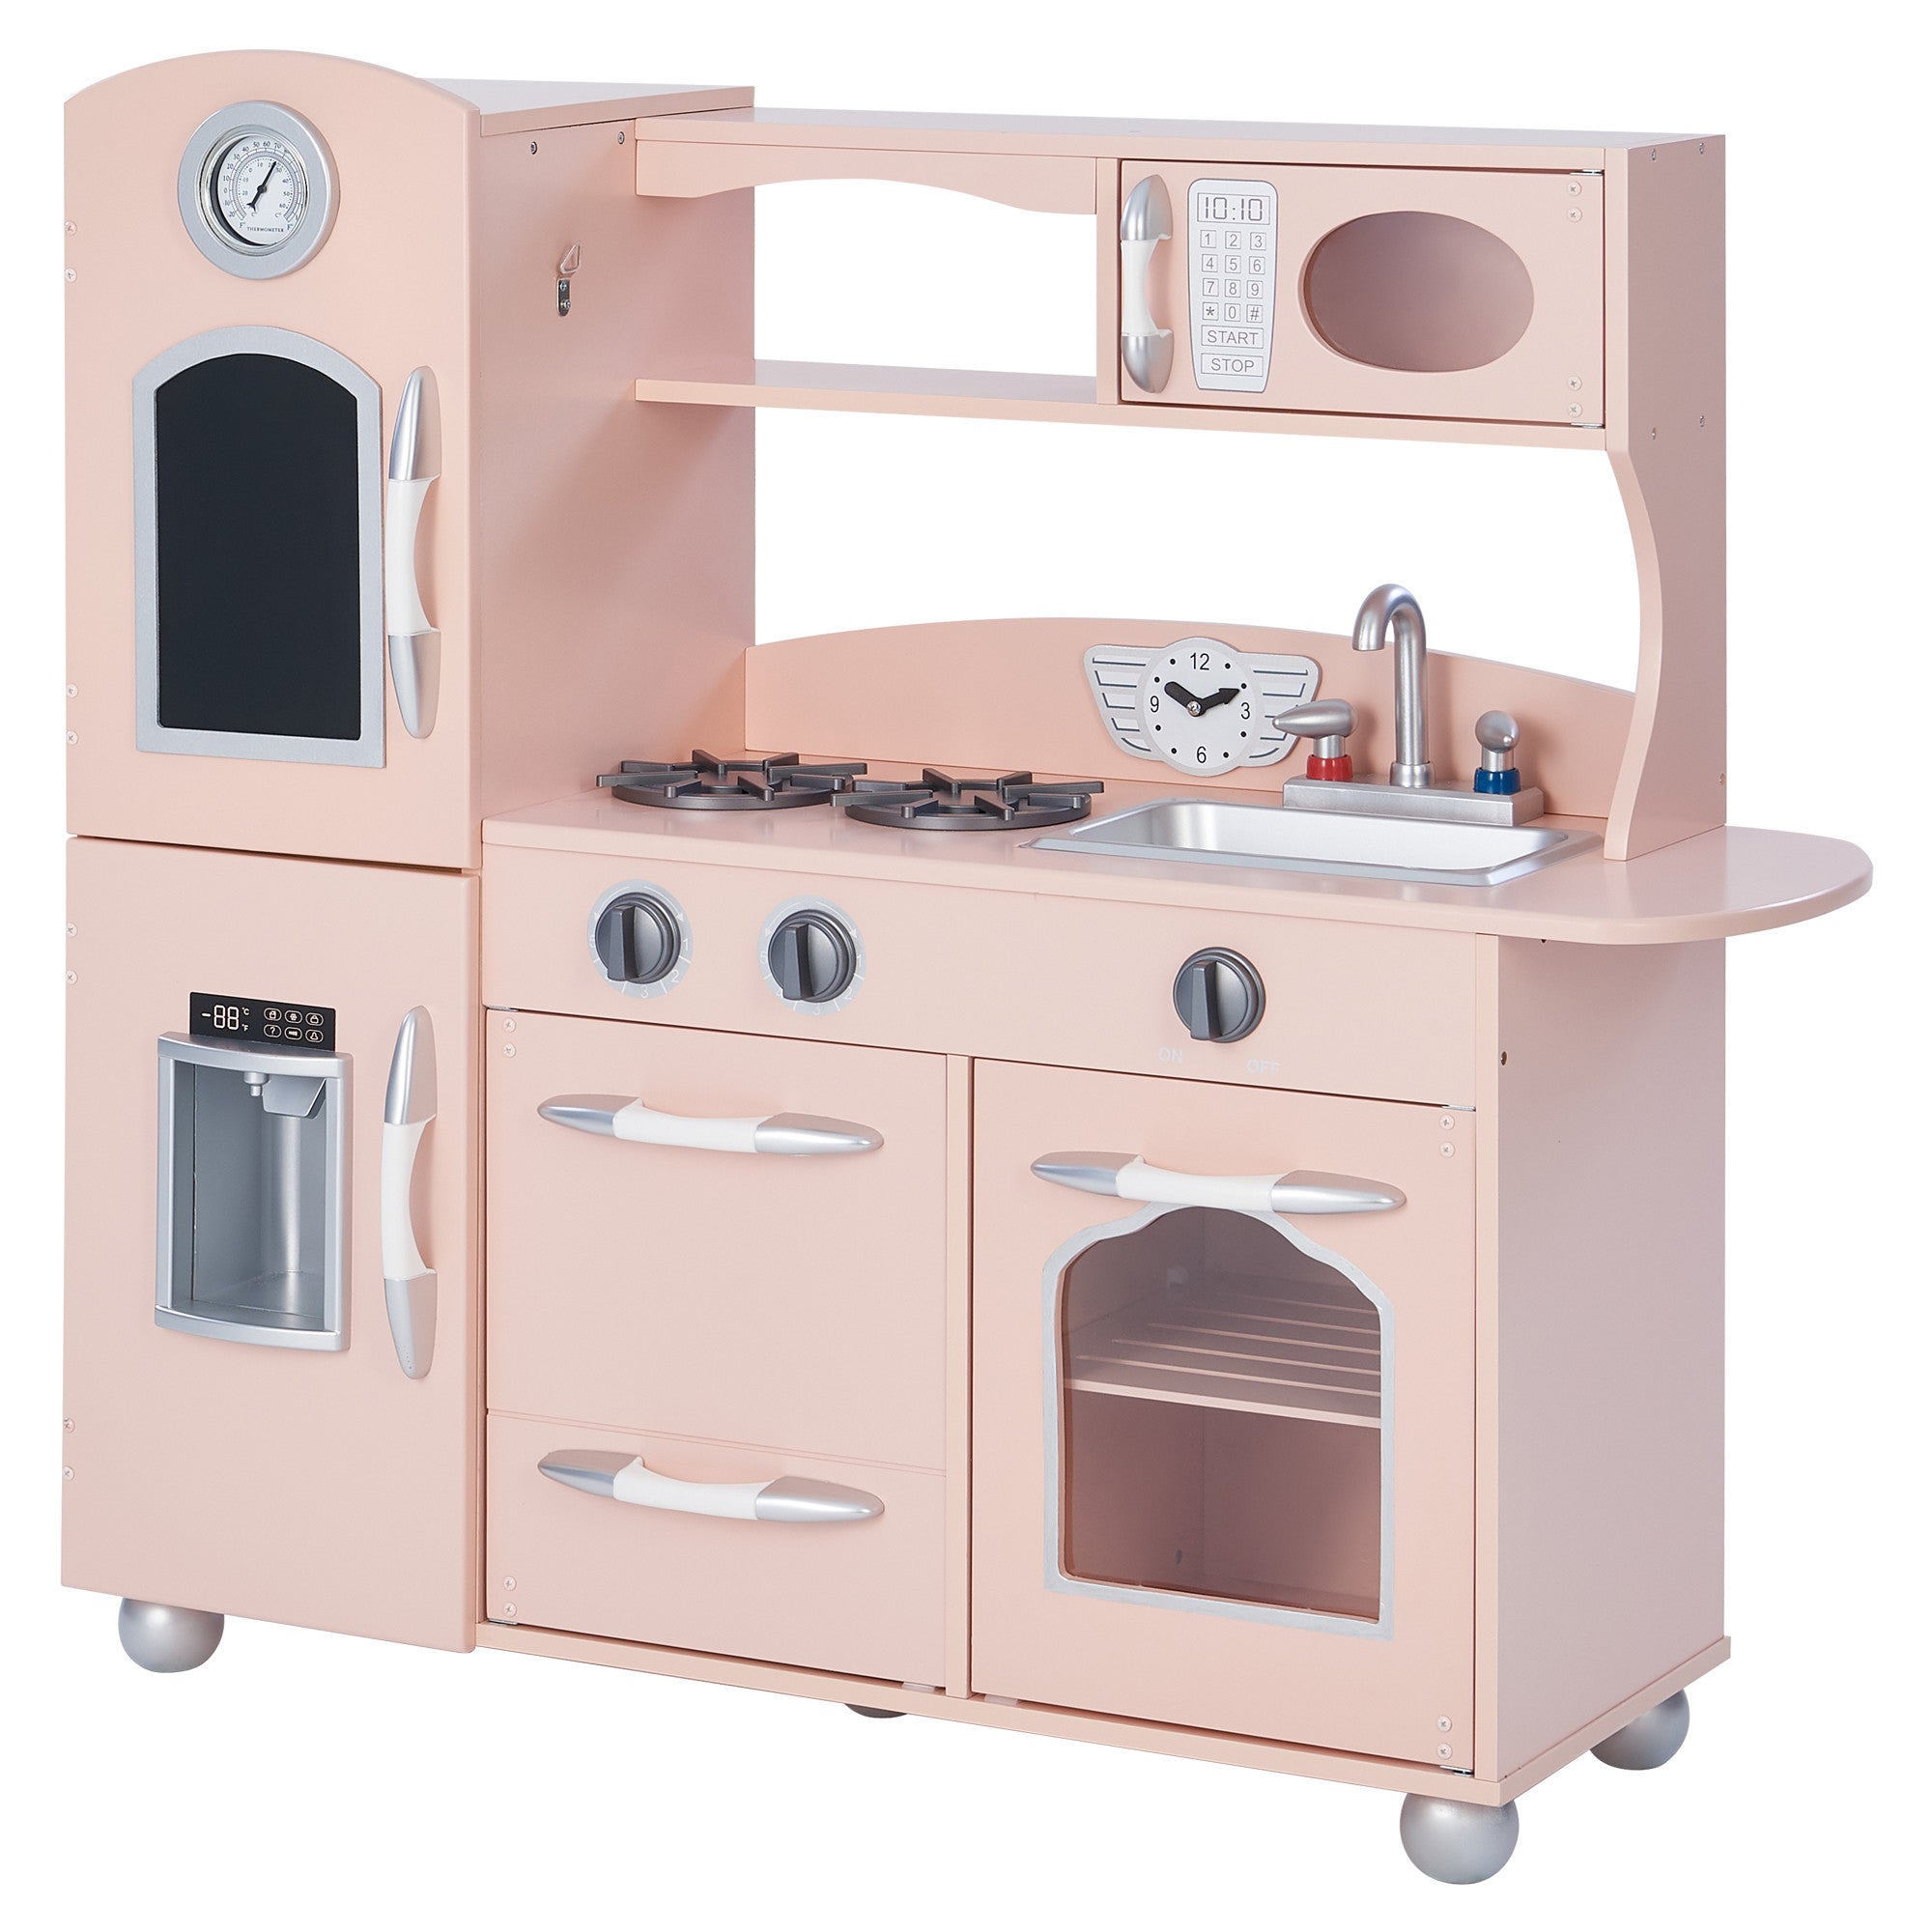 Little Chef Westchester Retro Play Kitchen, Pink